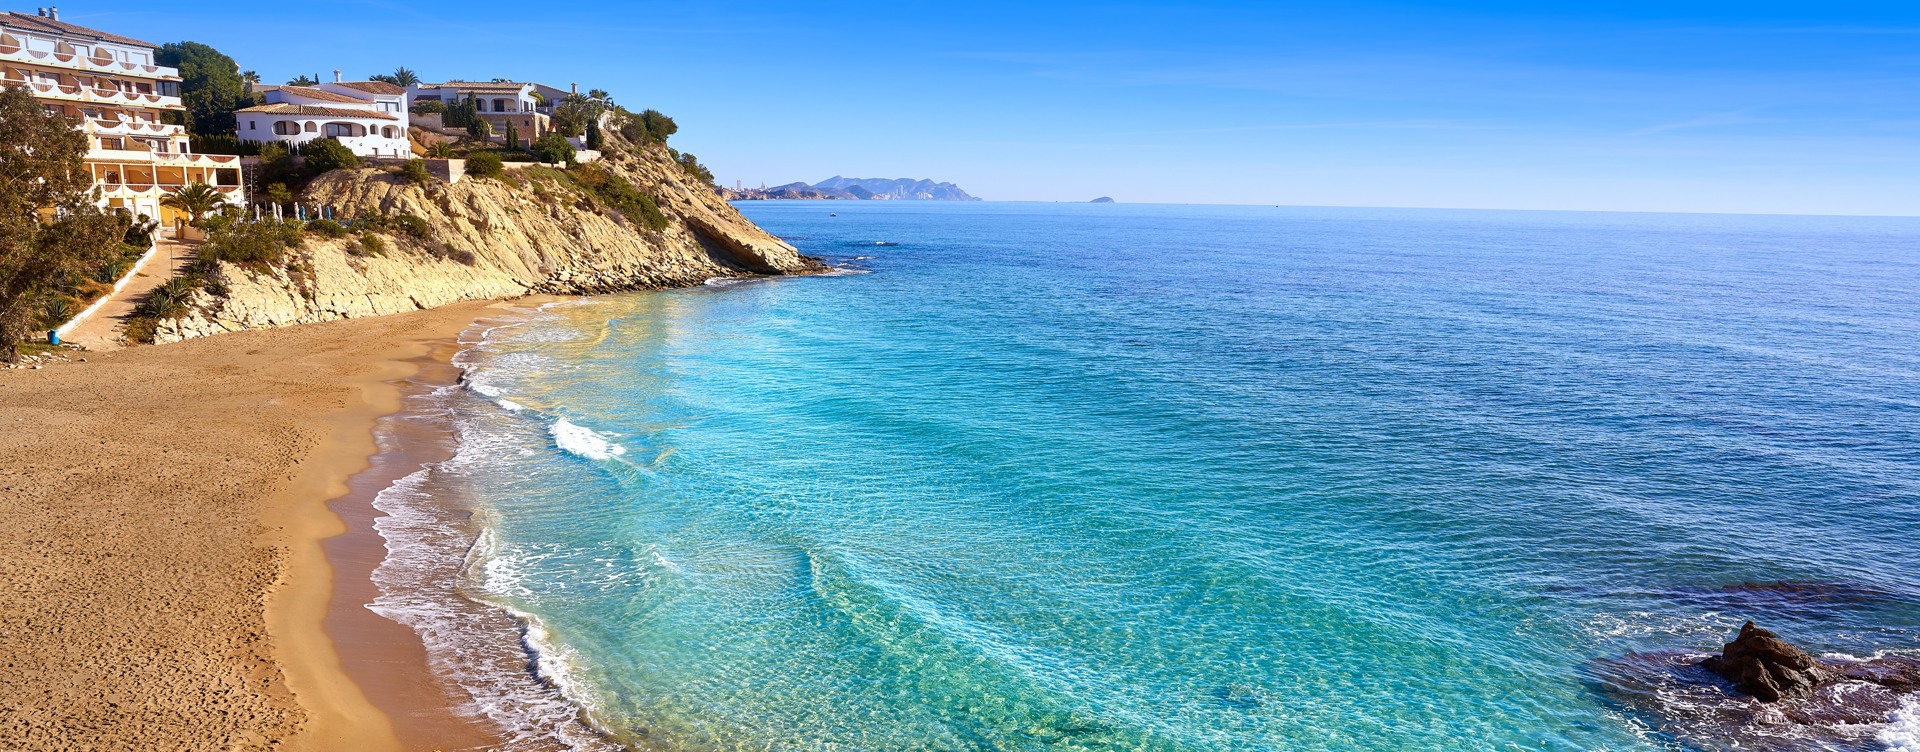 Beleef een onvergetelijke vakantie
in El Campello direct aan het zandstrand